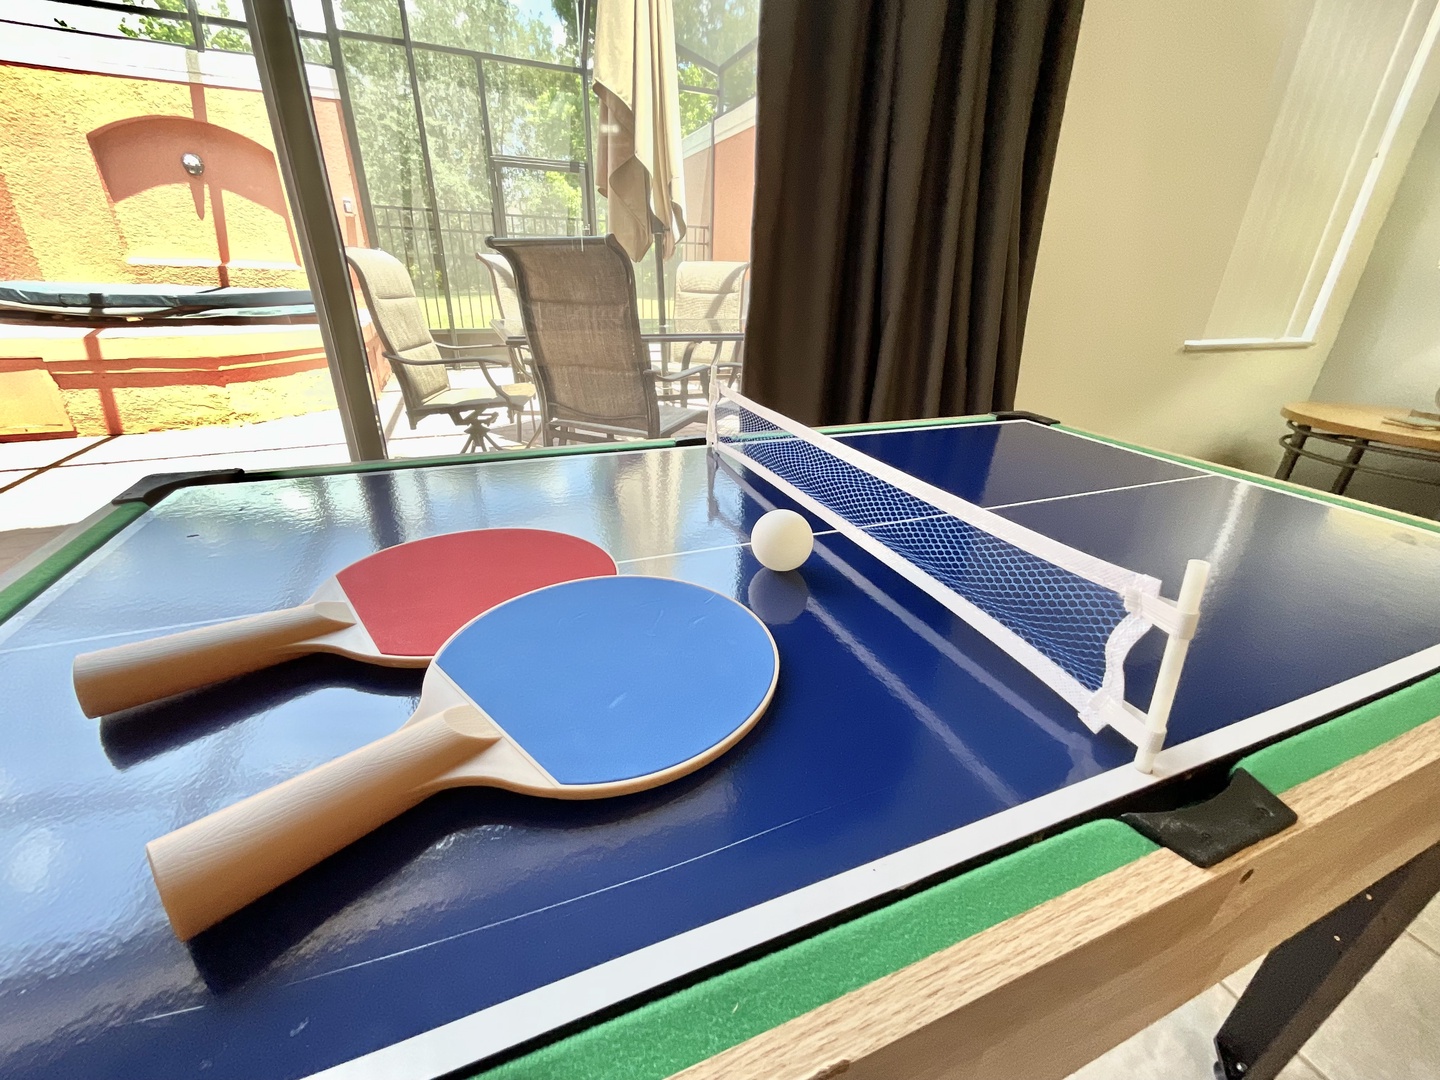 Ping Pong!